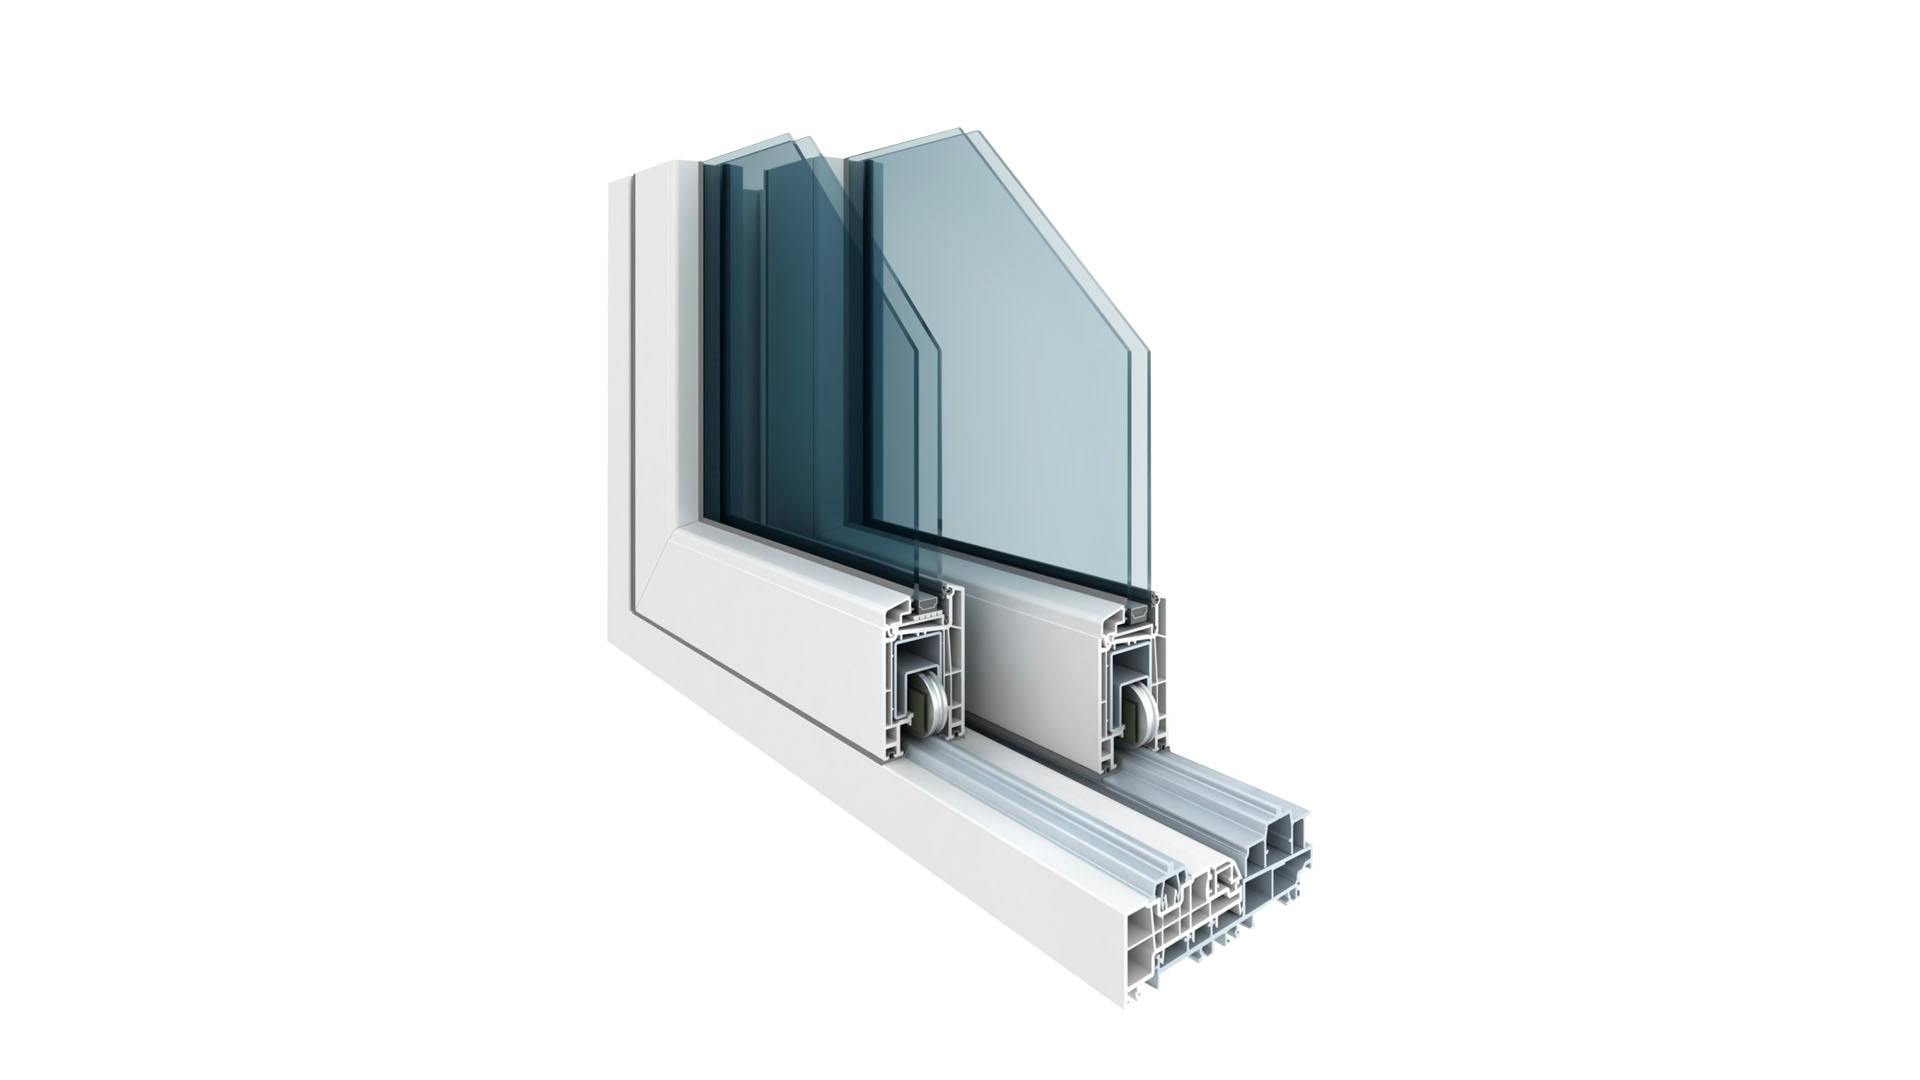 Ventana con doble vidrio y cámara intermedia, la cual contiene aire o gas, cosa que le permite brindar un aislamiento térmico al interior del hogar.